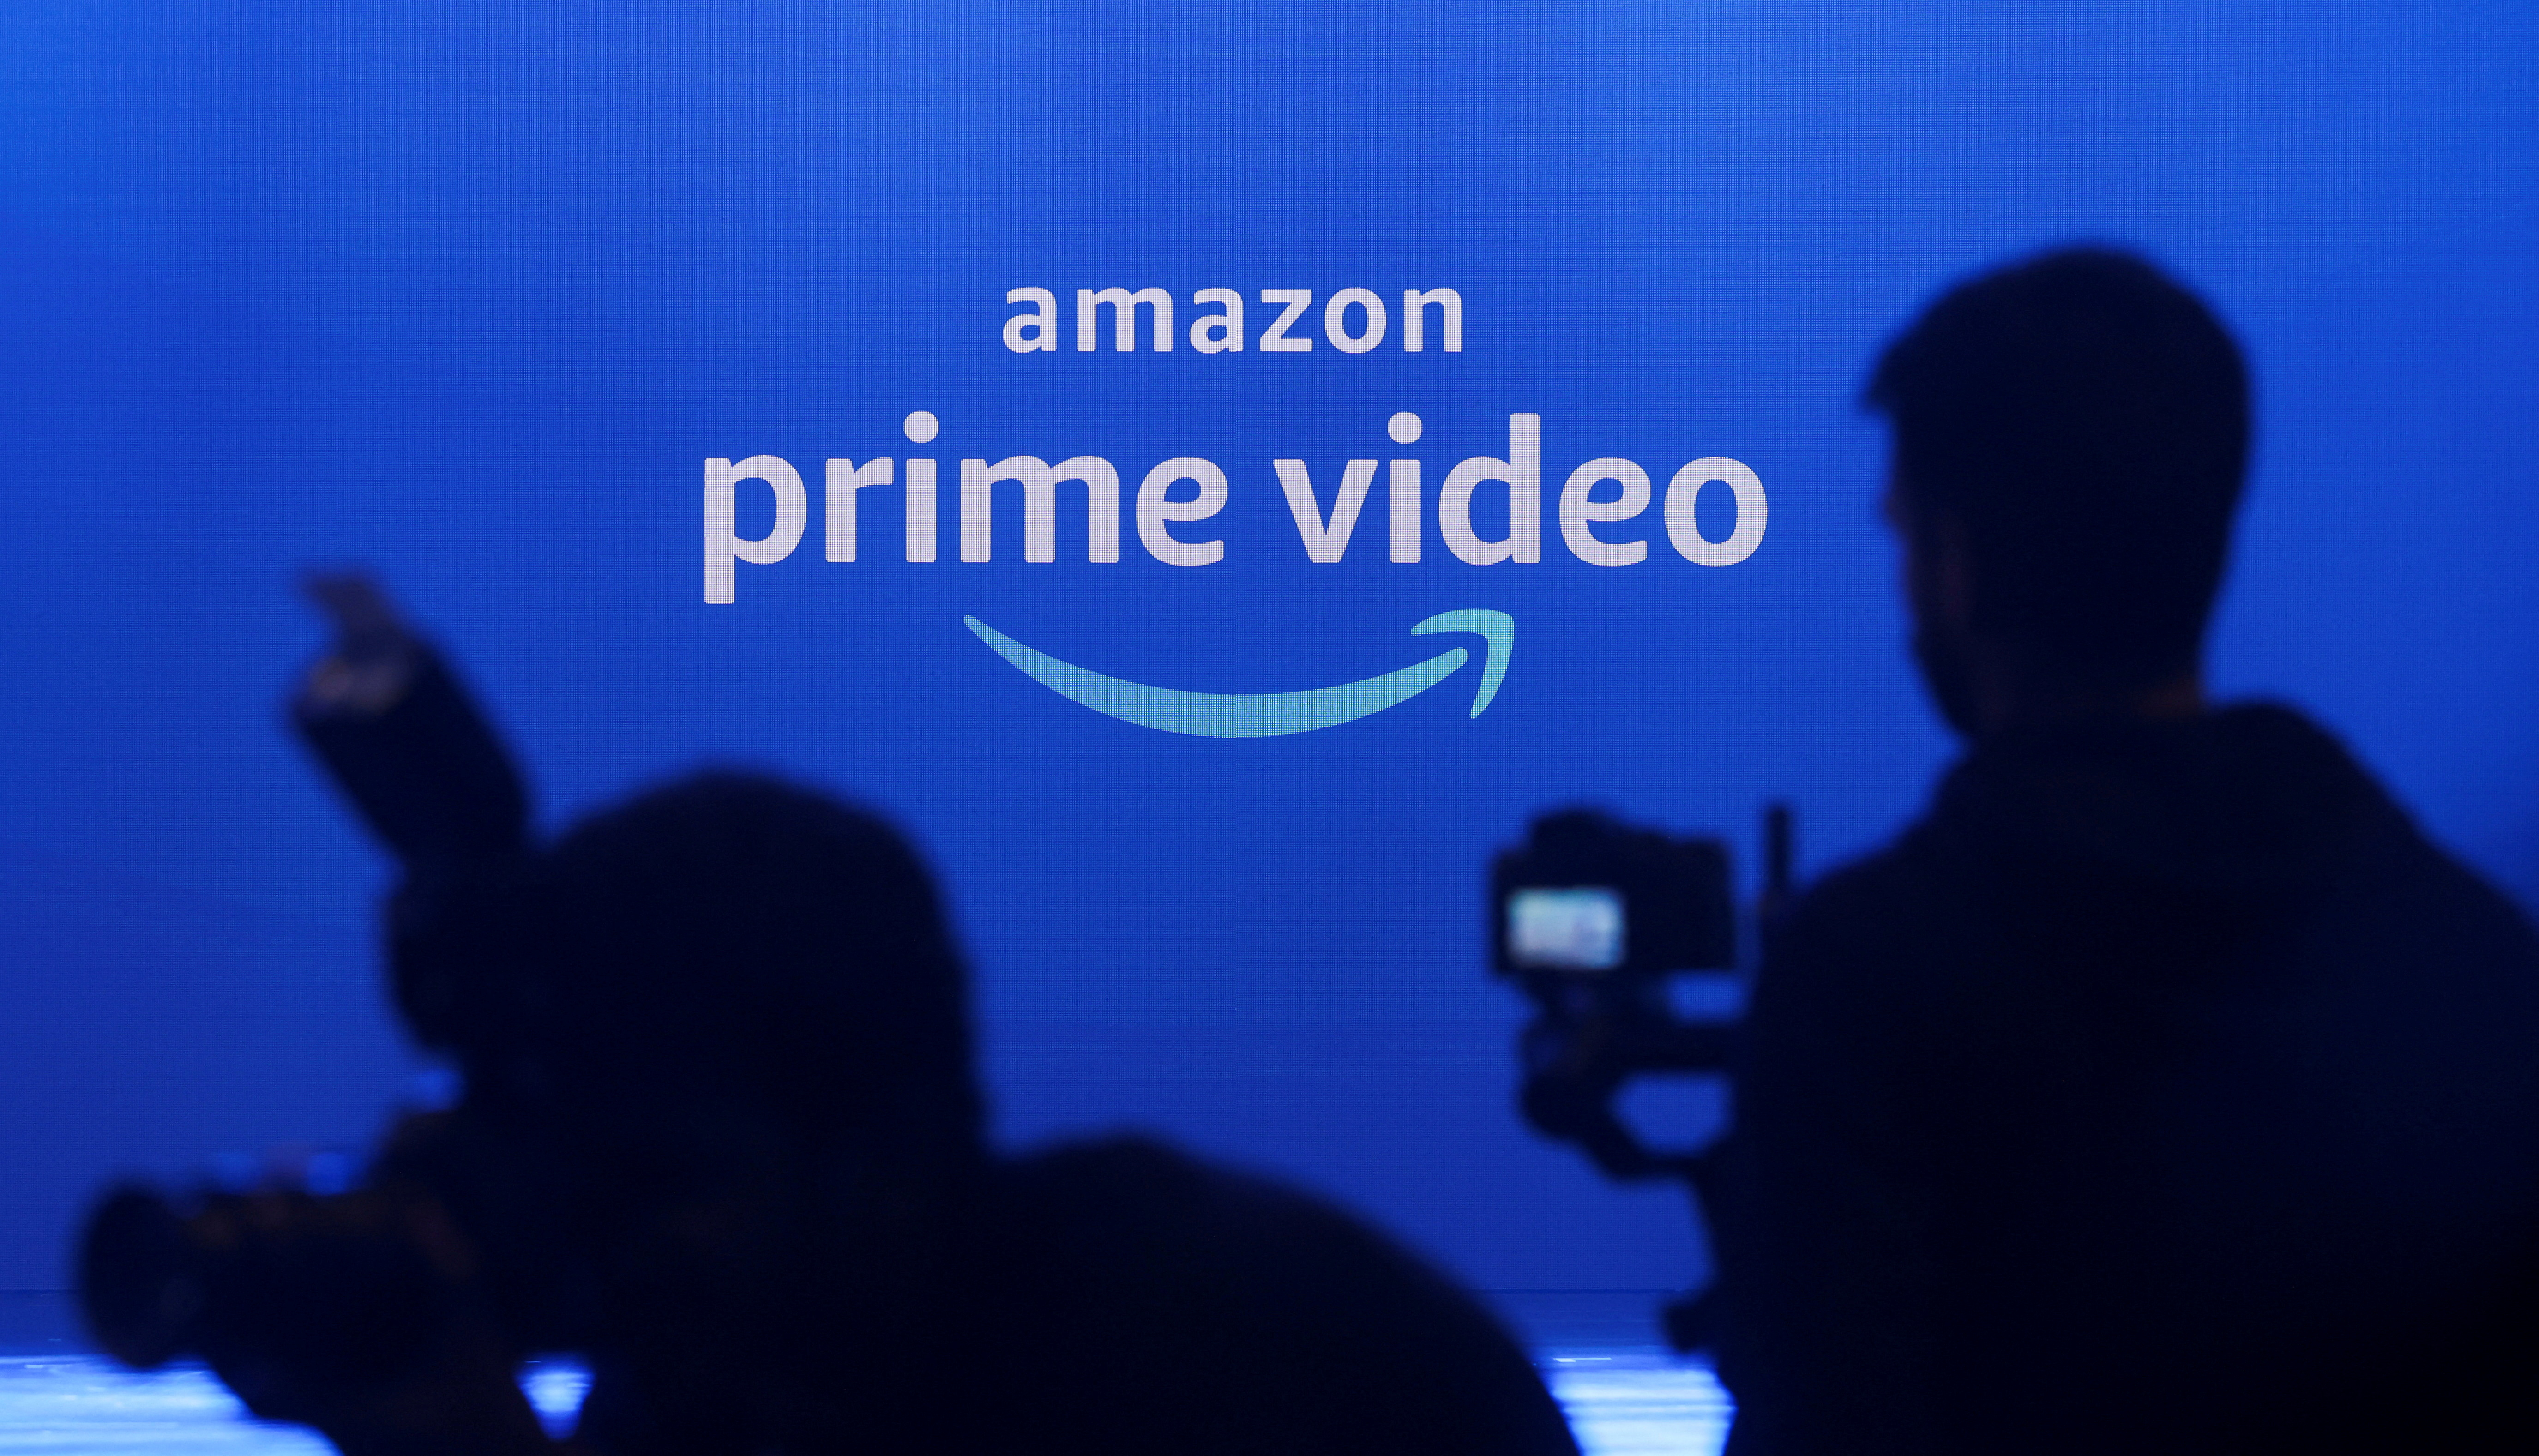 Amazon es una compañía estadounidense de comercio electrónico que también ha entrado a la batalla por el streaming con Prime Video. (REUTERS/Francis Mascarenhas)